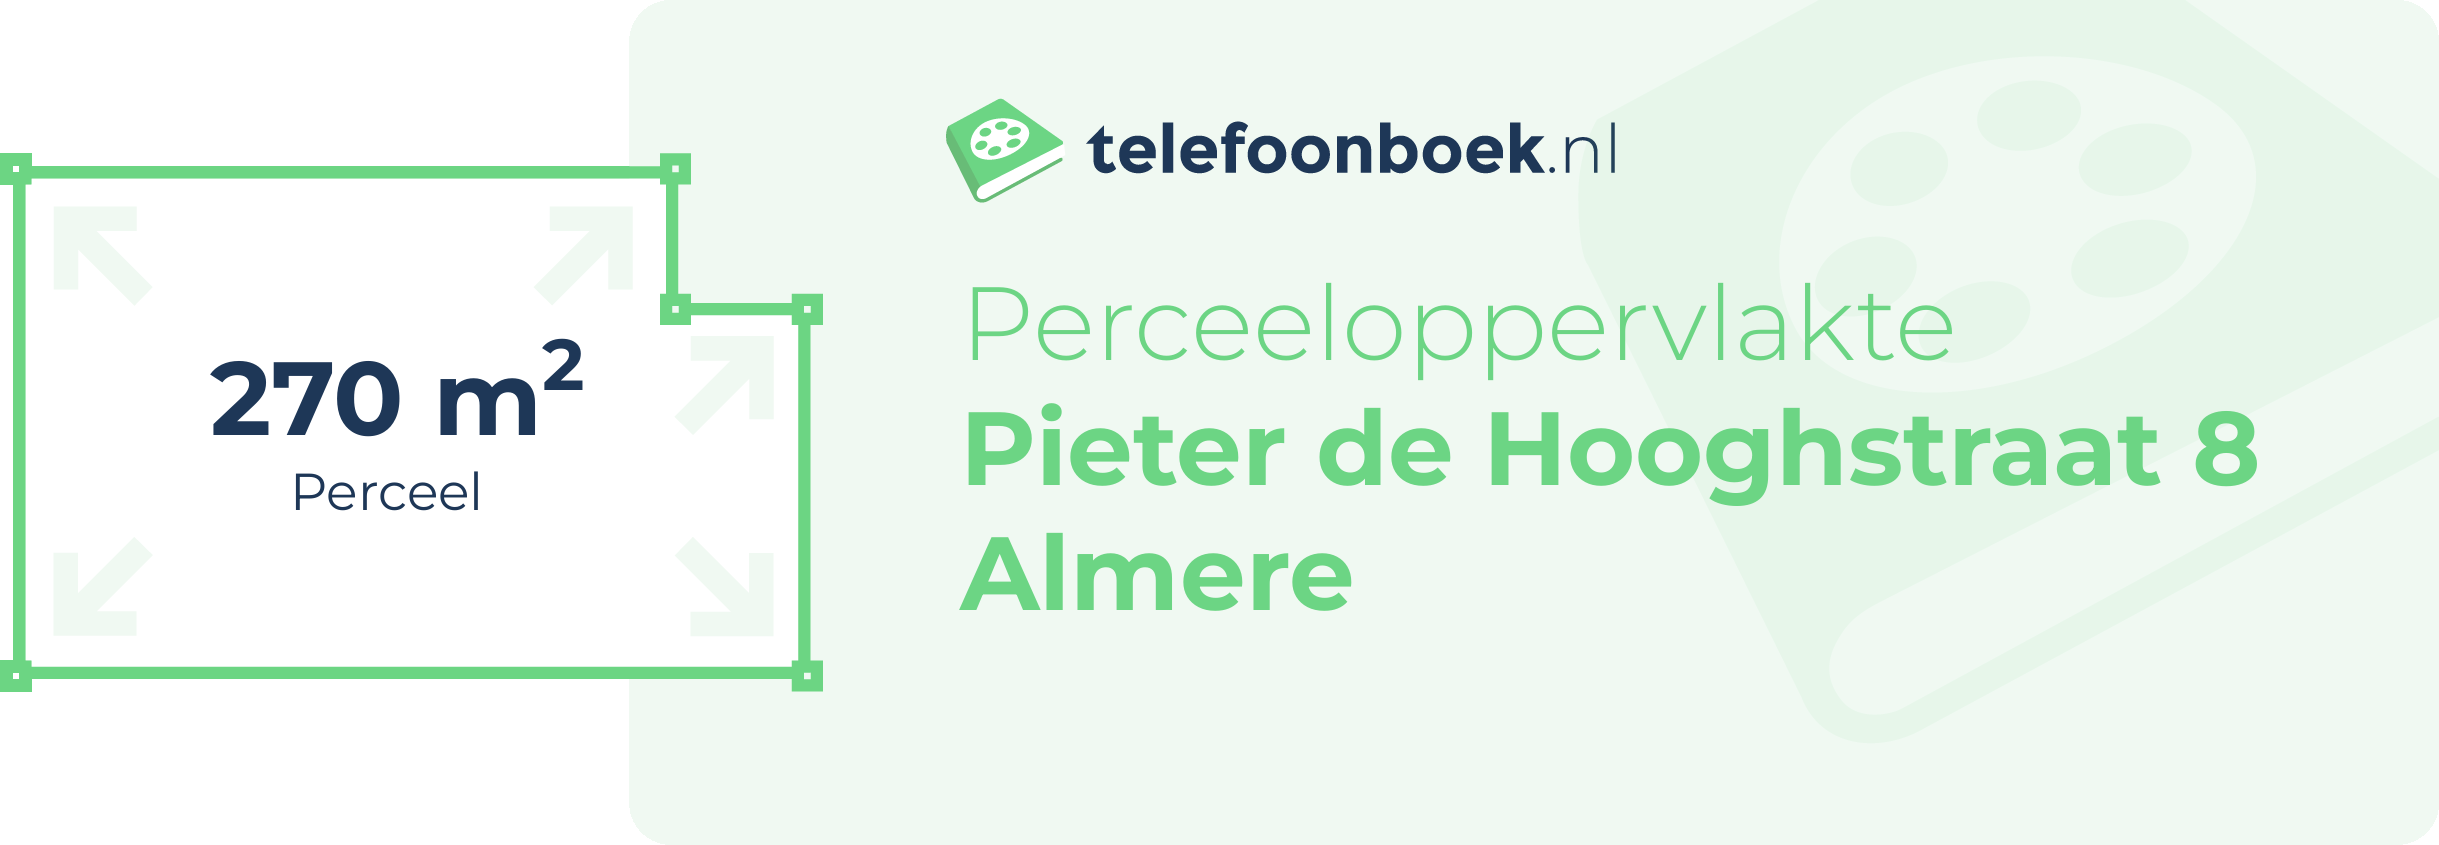 Perceeloppervlakte Pieter De Hooghstraat 8 Almere